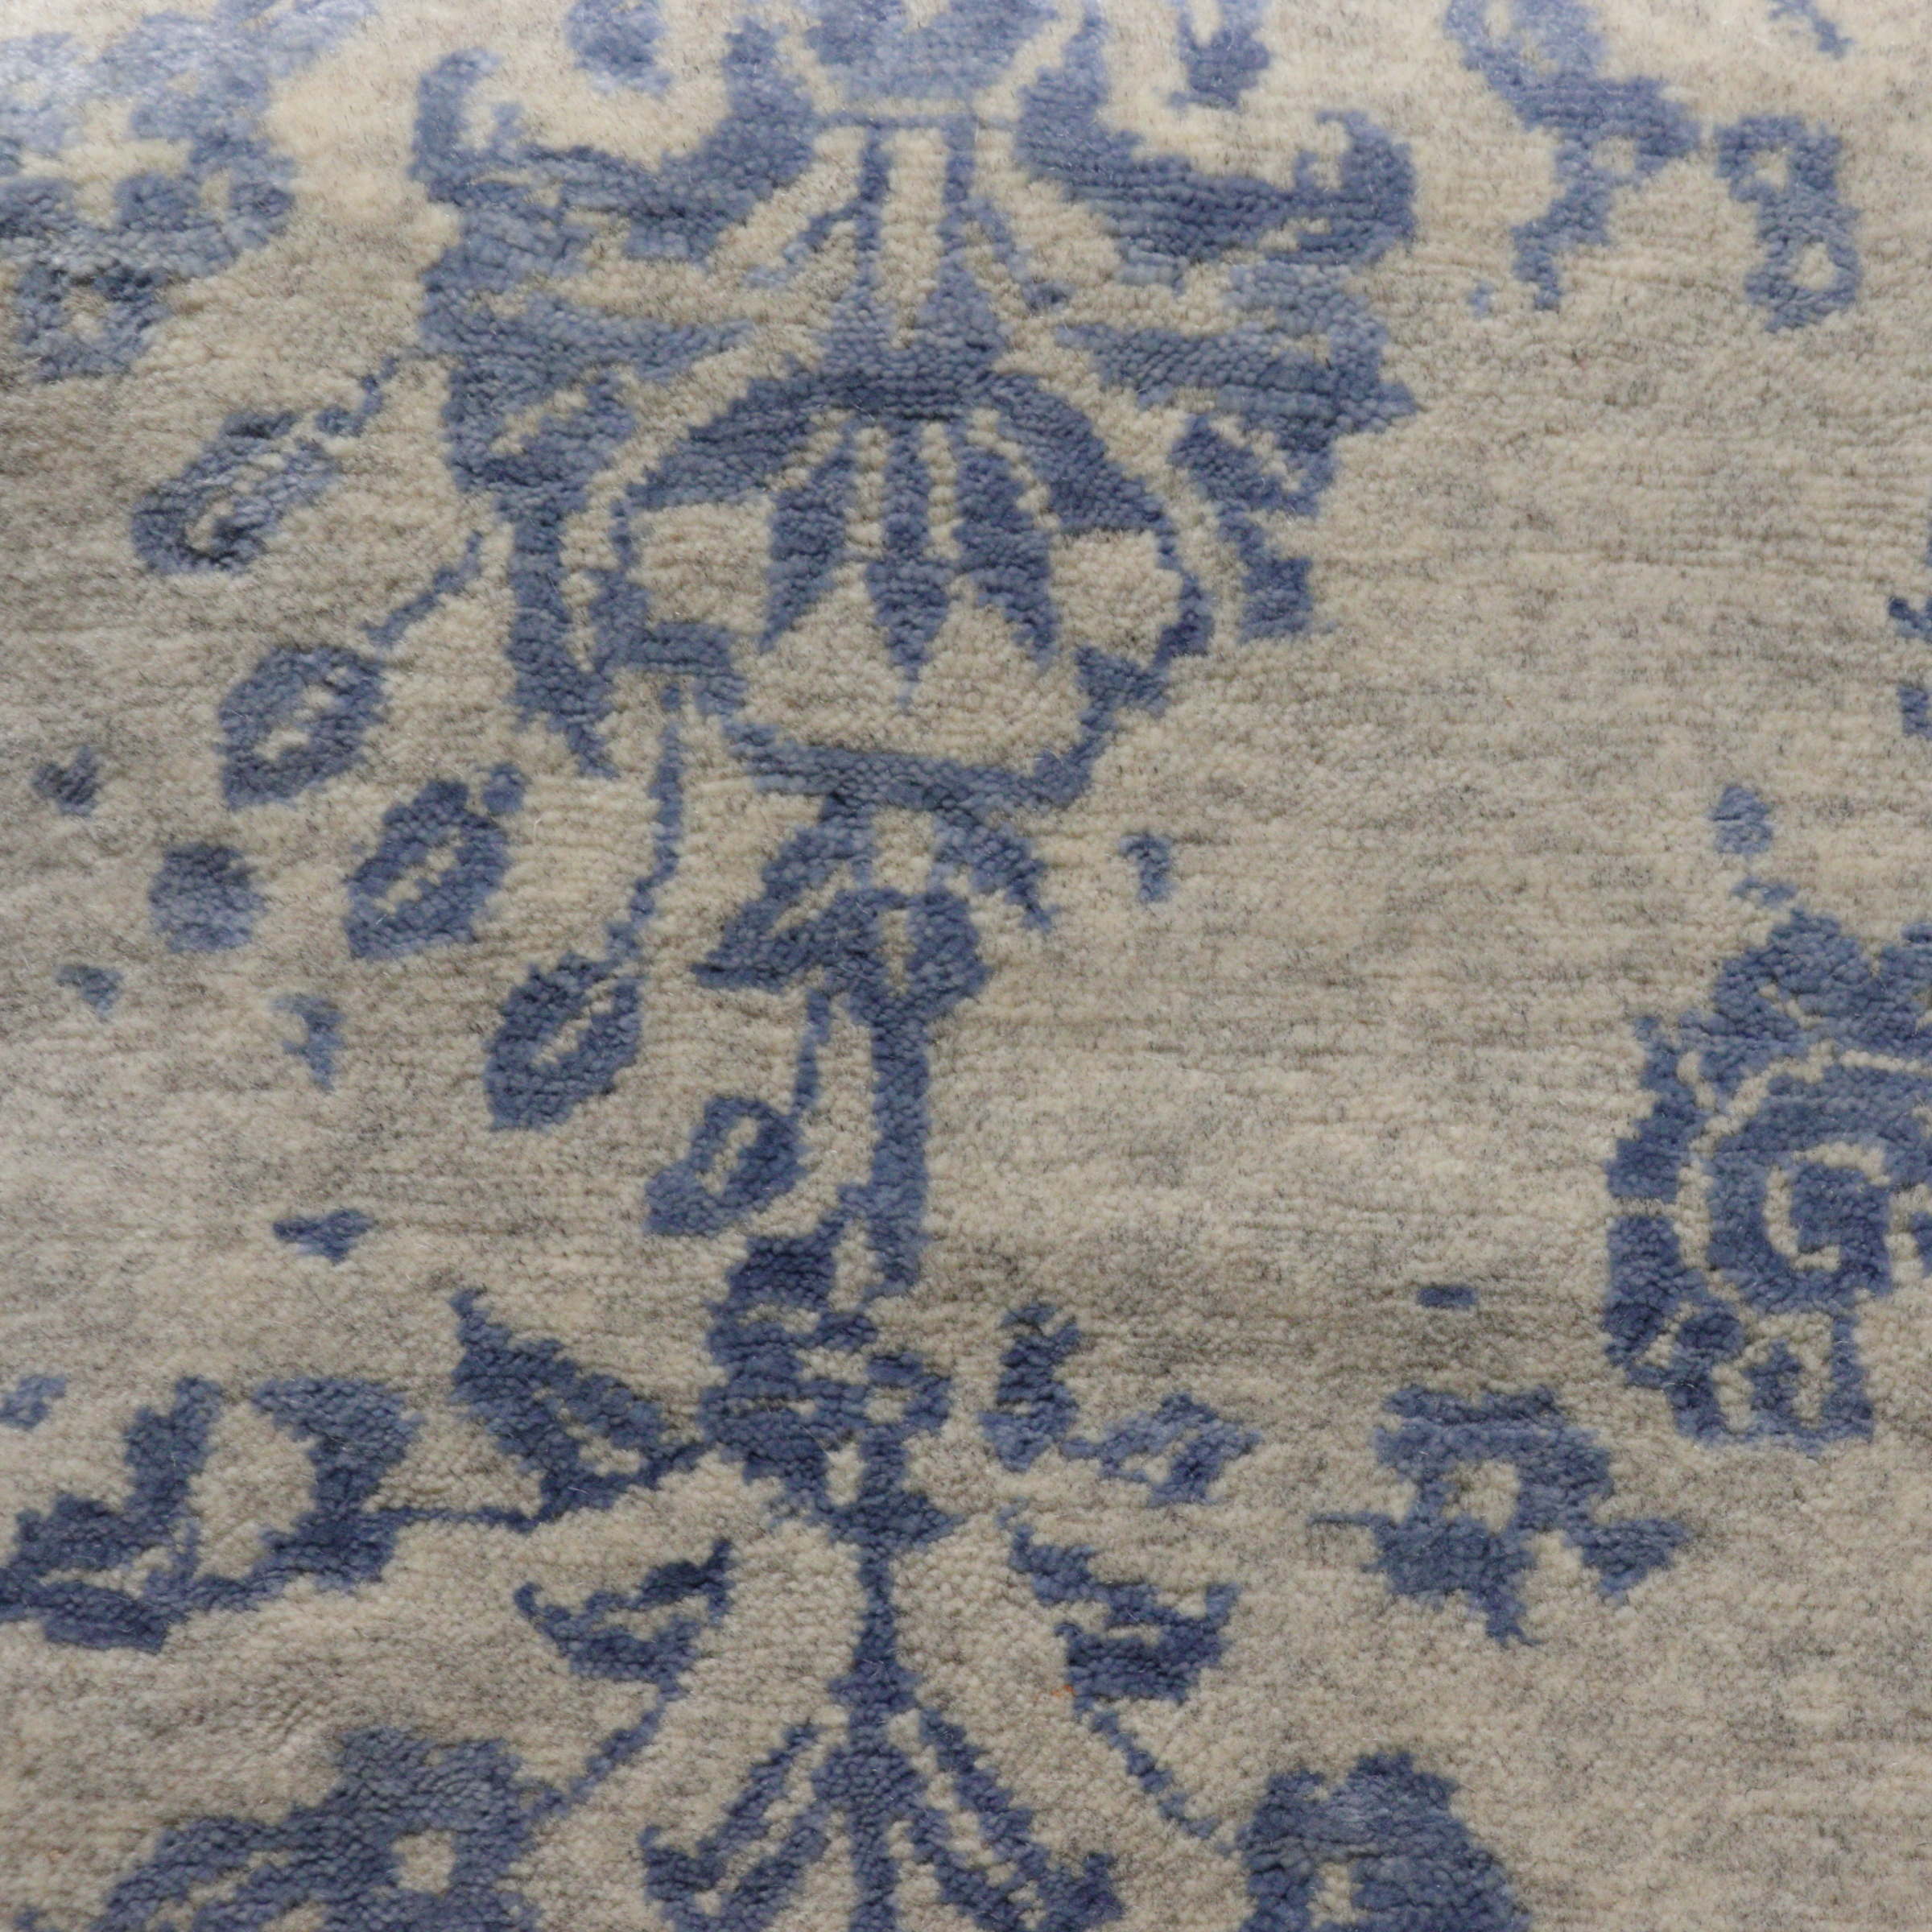 Broken Flowers blue, Indischer Designerteppich im Vintagestil, Wolle & Bambusseide, Detailansicht